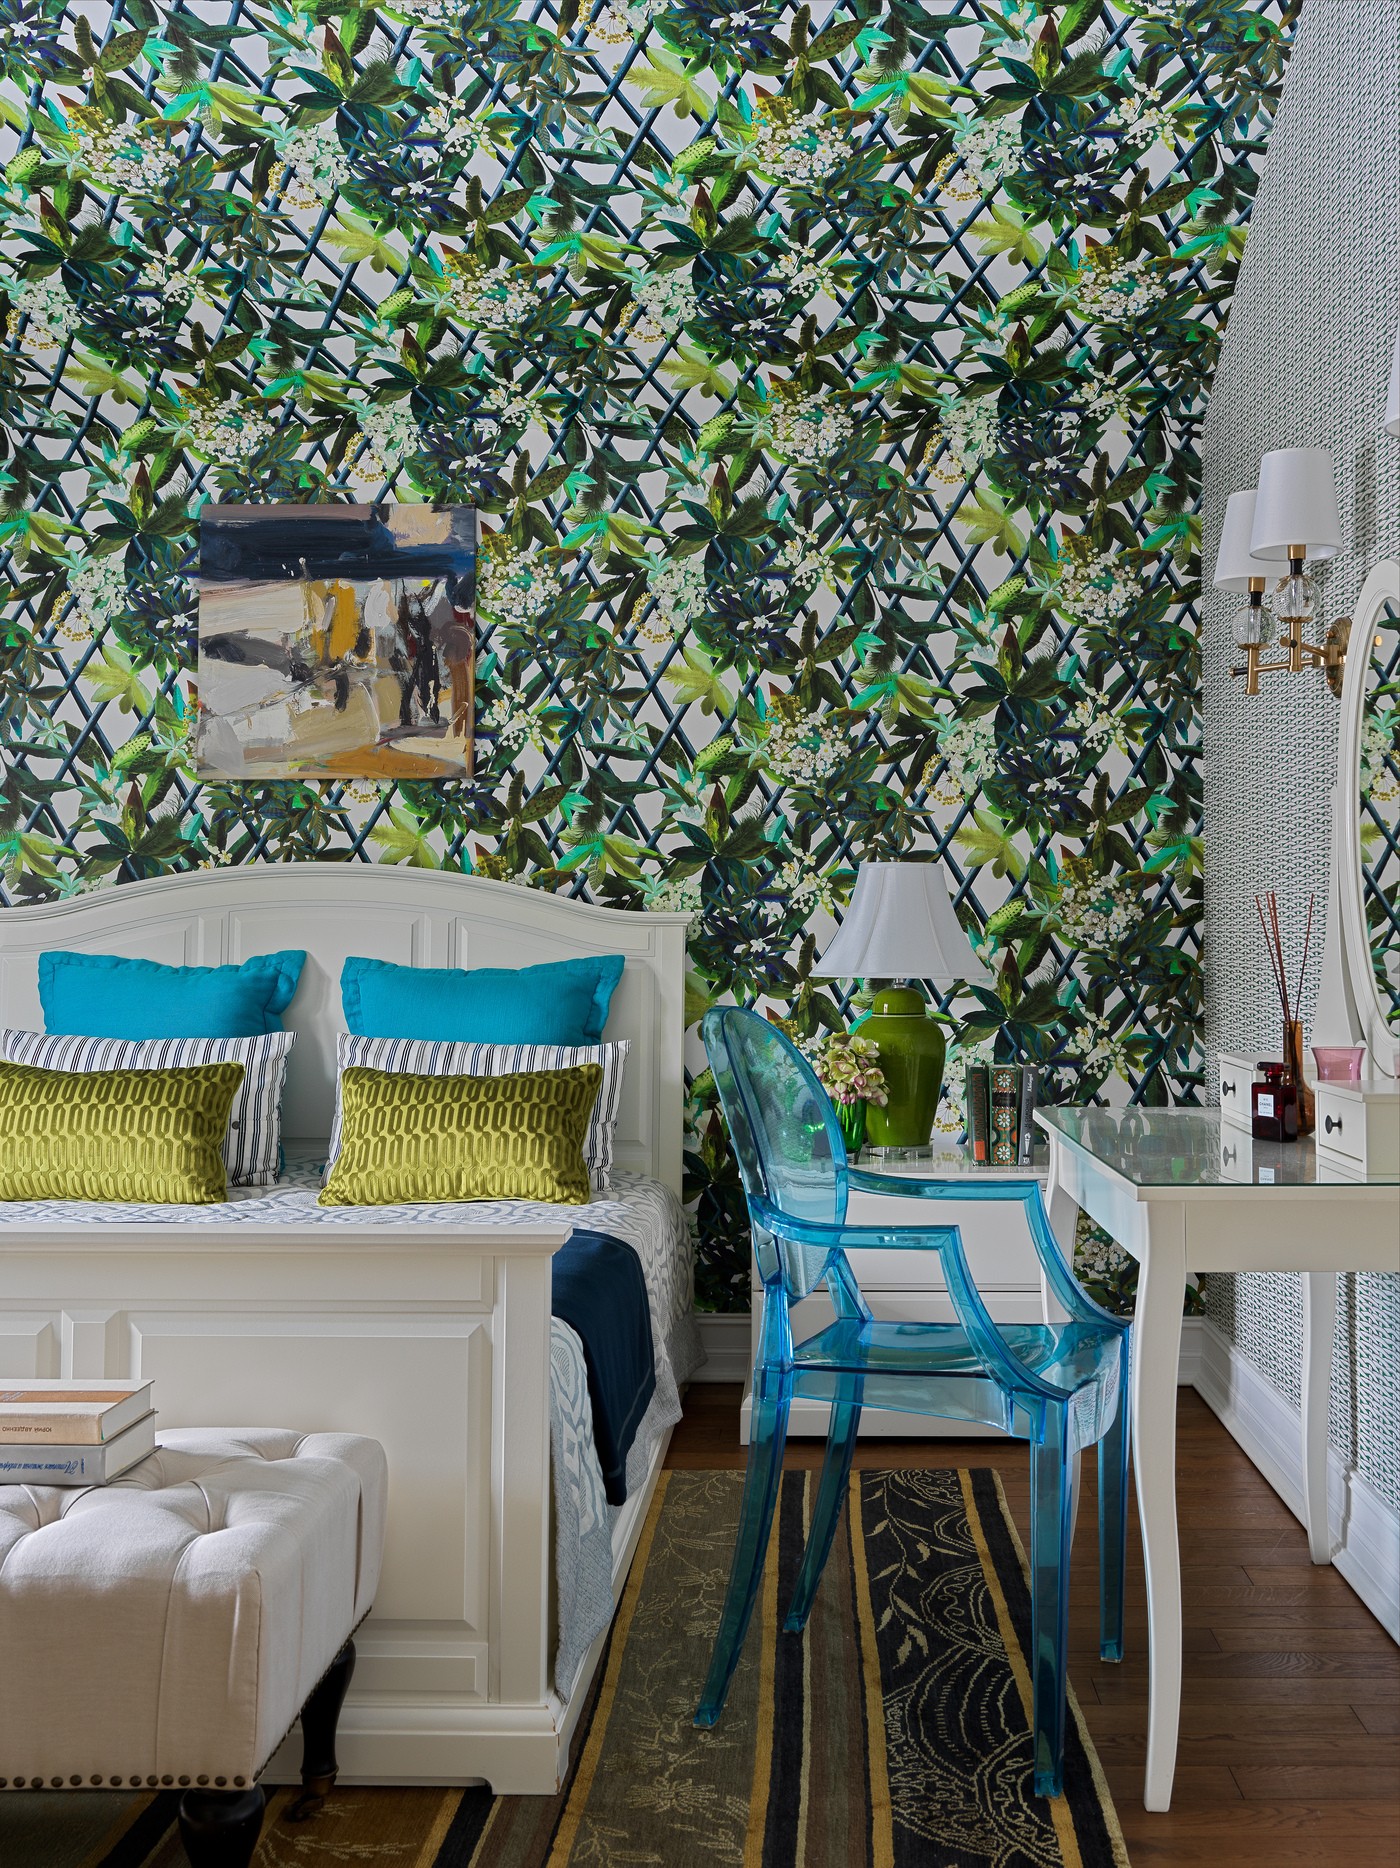 Décor do dia: quarto de casal com papel de parede estampado e decoração alegre (Foto: Sergey Krasyuk )